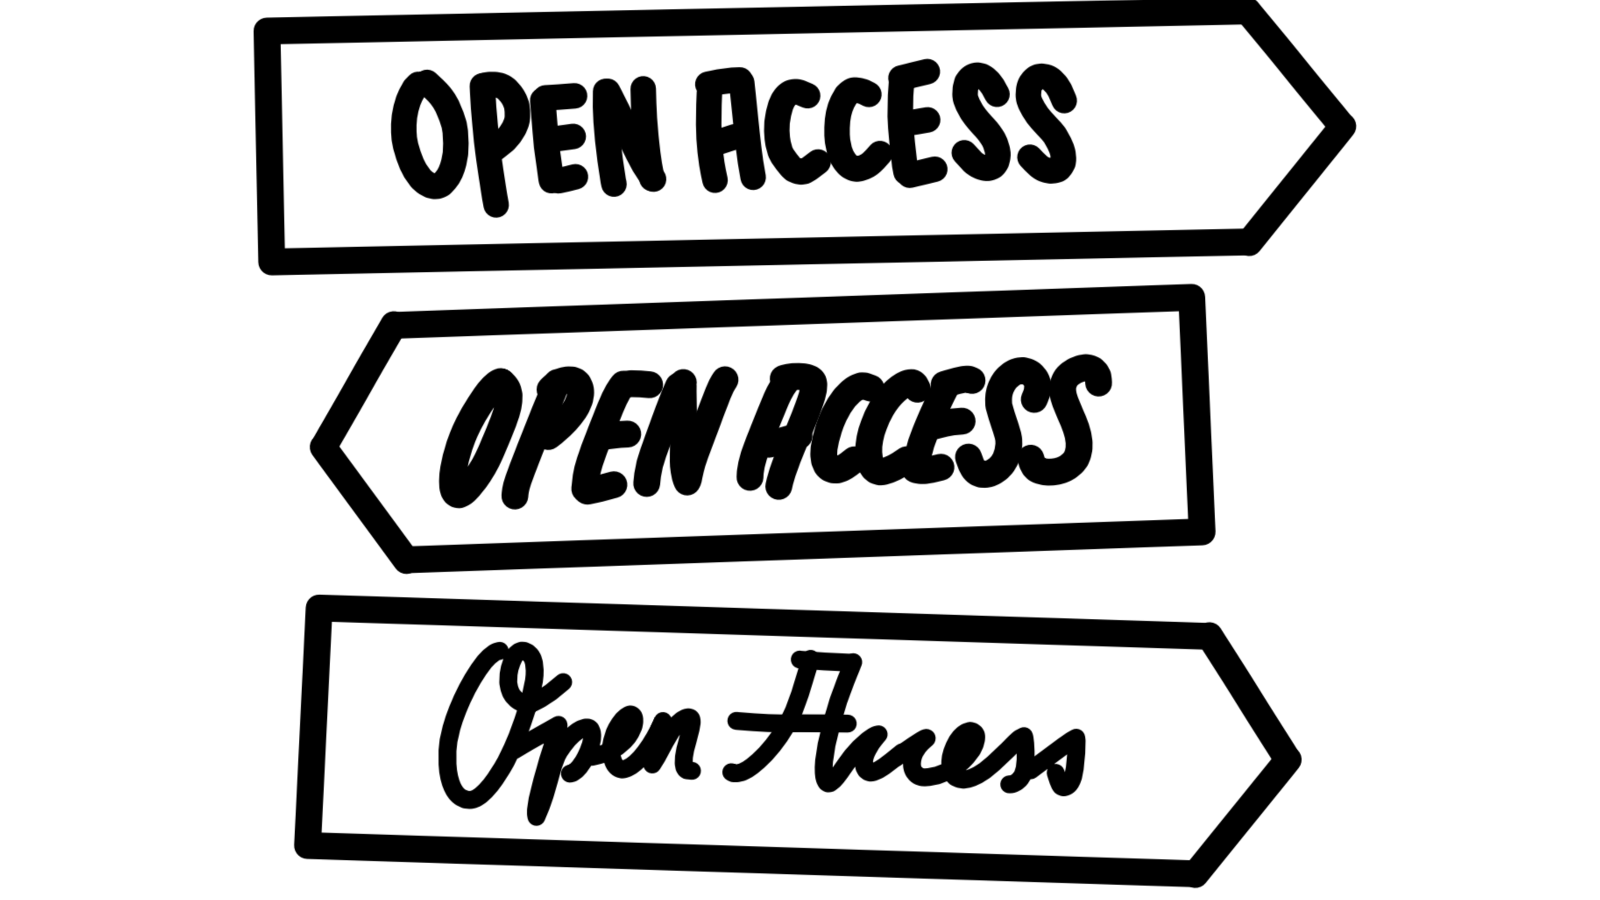 illustrierter Wegweiser mit der Aufschrift Open Access